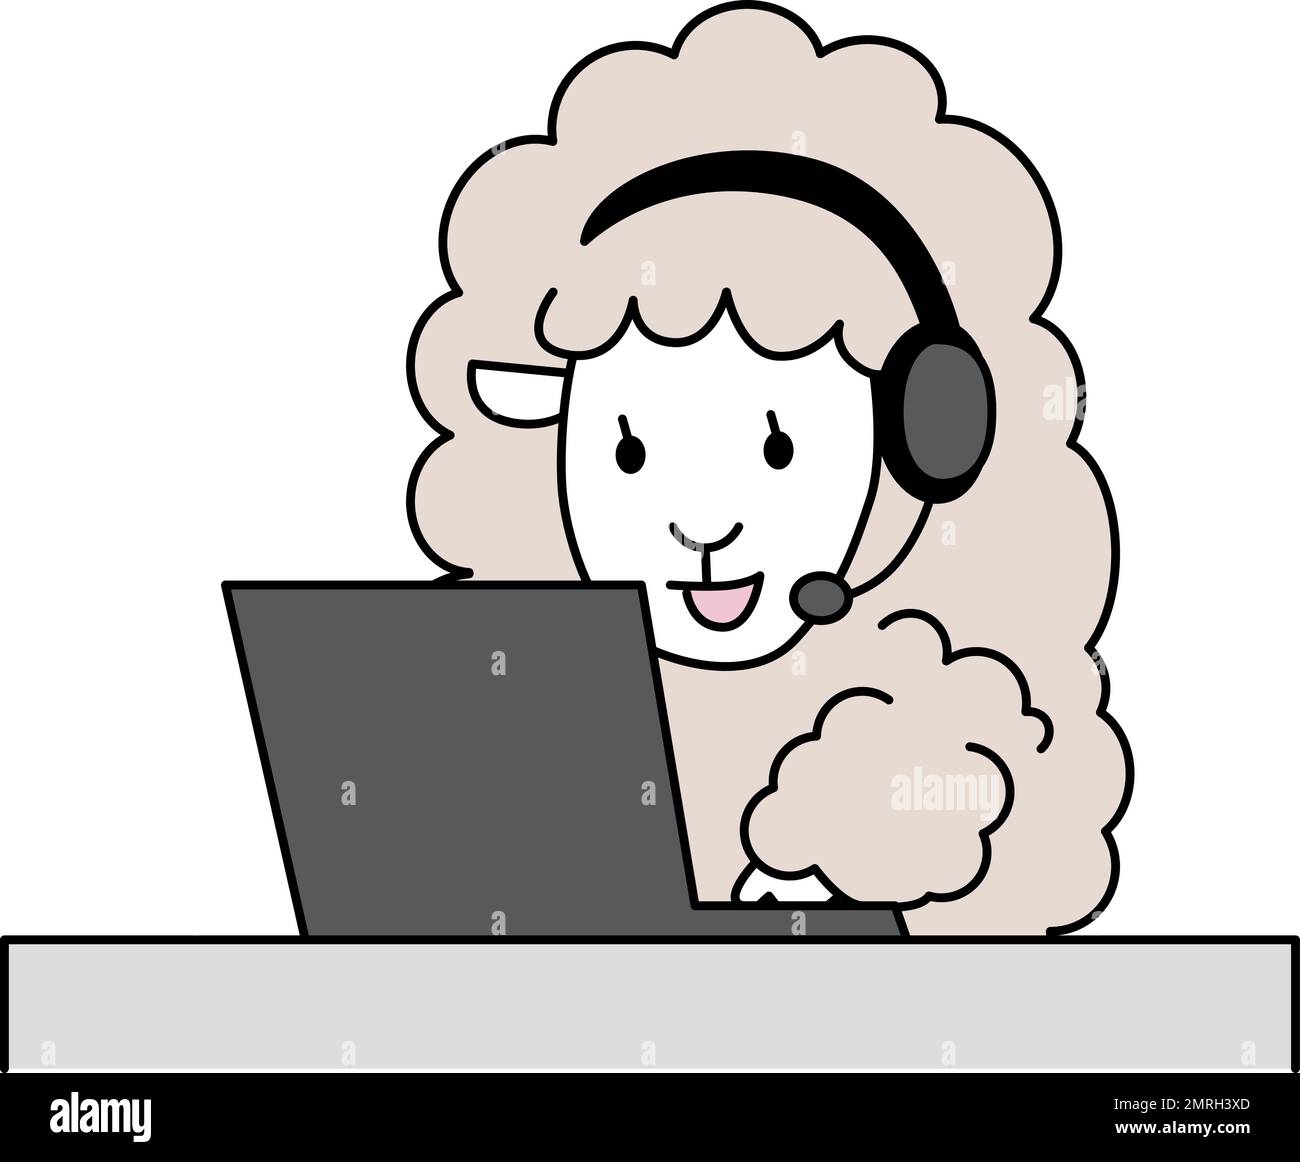 Das Schaf erhält den Anruf auf dem Laptop. Schafe, die Telearbeit machen. Humorvolle Tierbilder. Stock Vektor